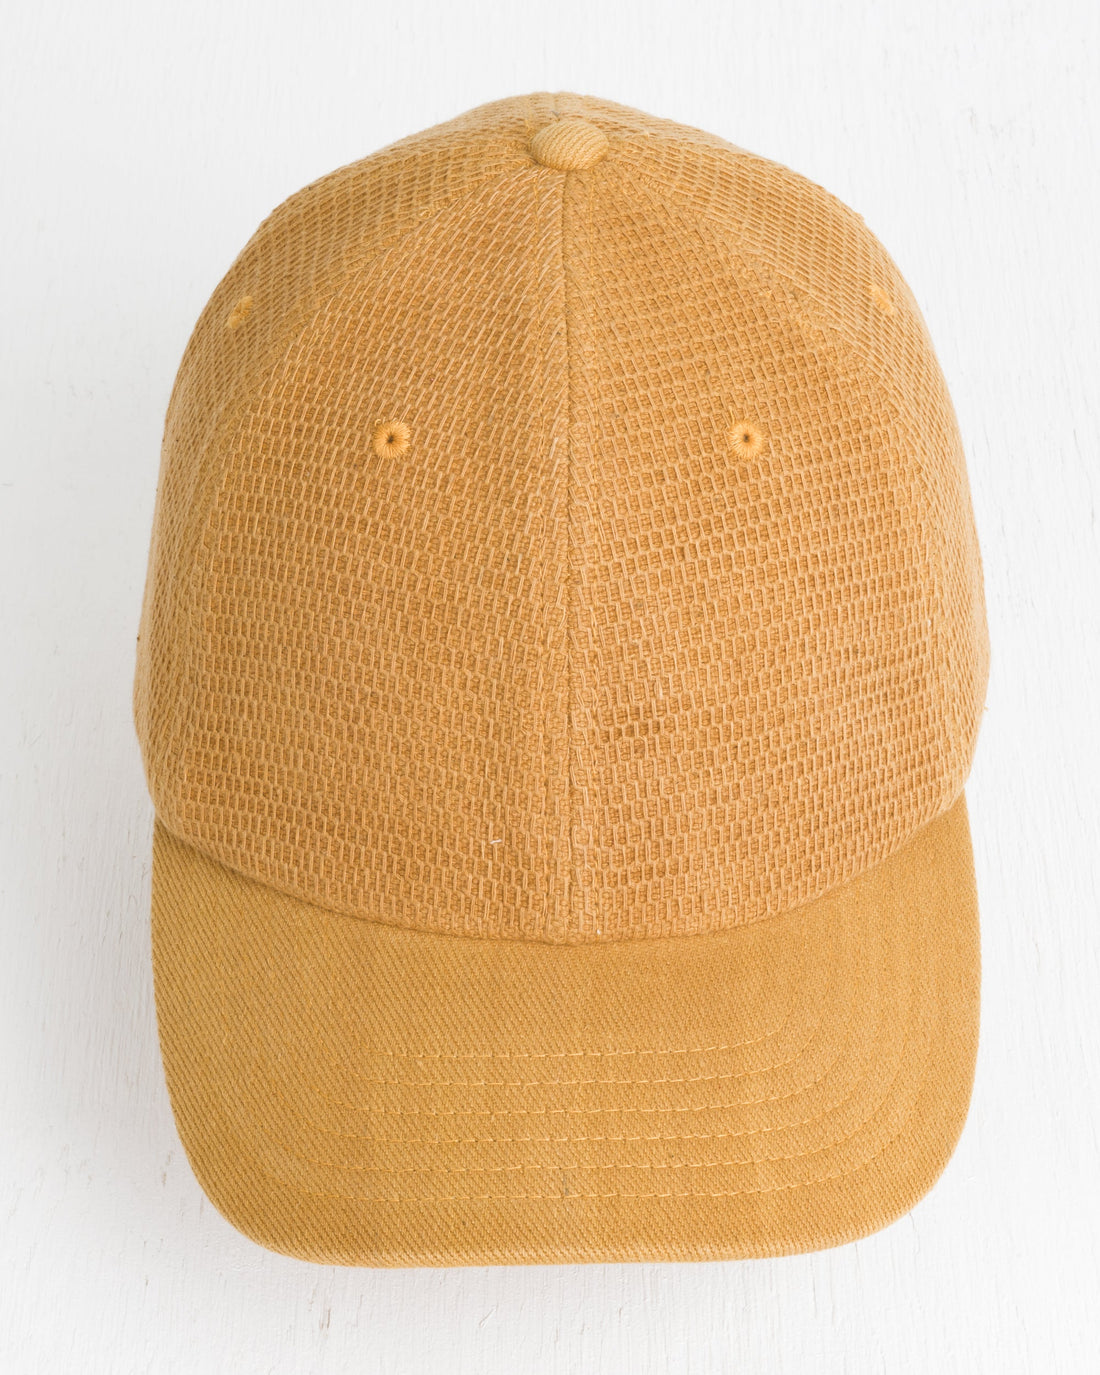 Cap in Mustard Honeycomb